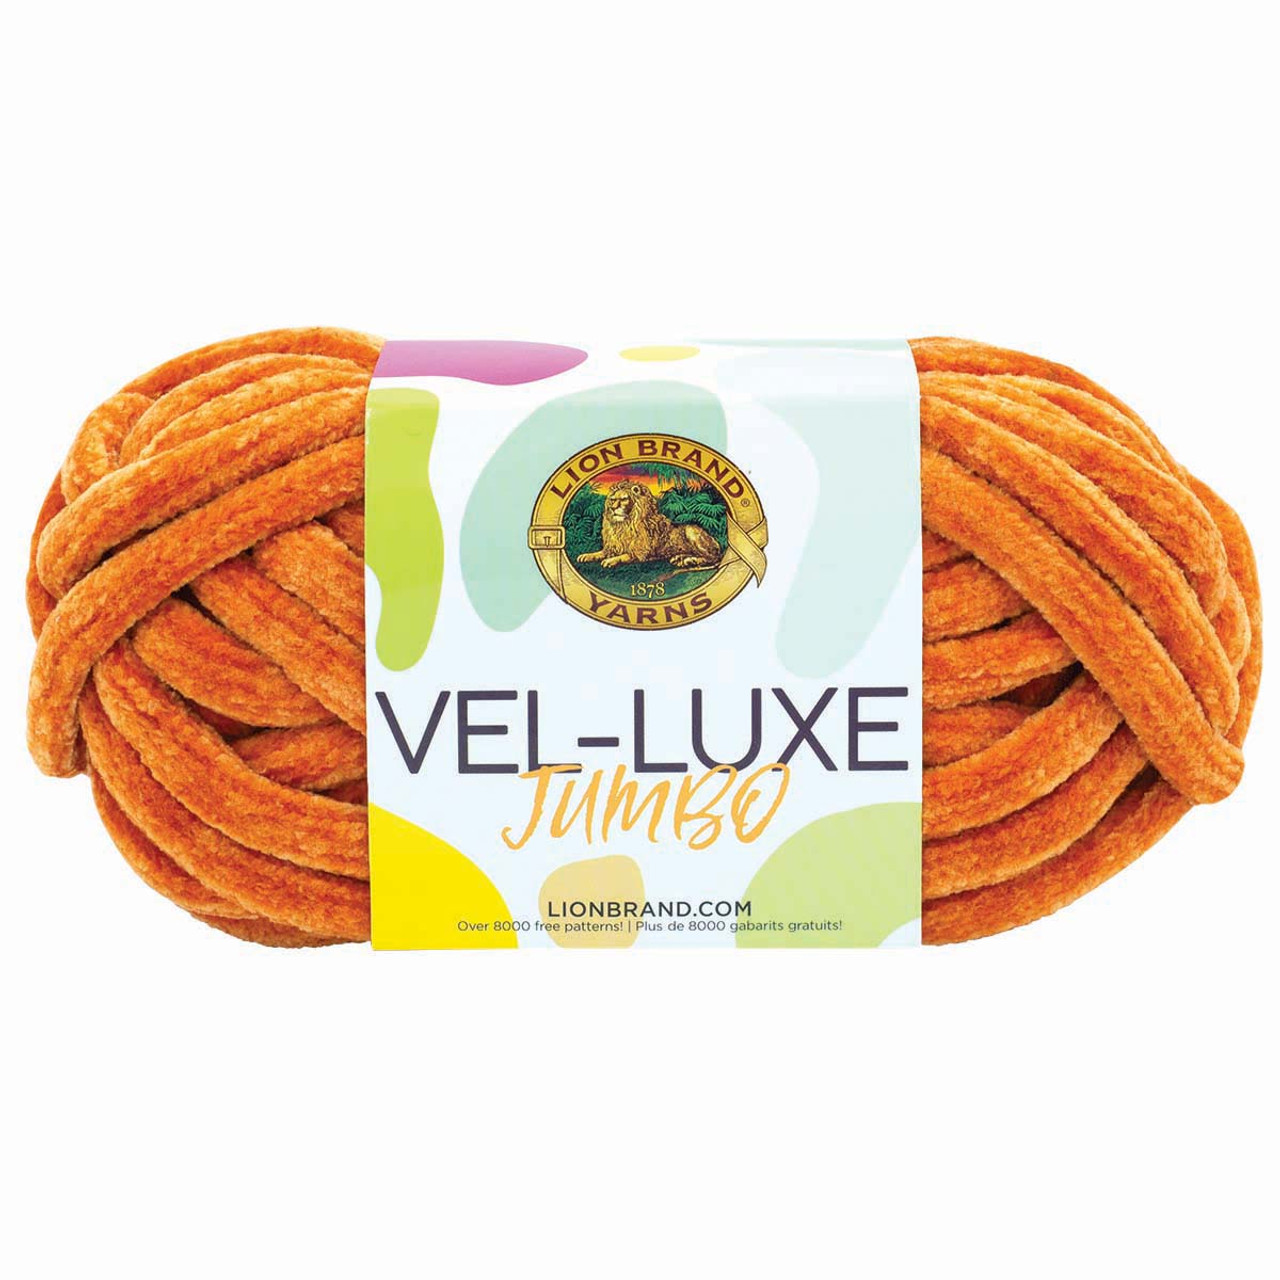 Lion Brand Vel-Luxe Jumbo Yarn